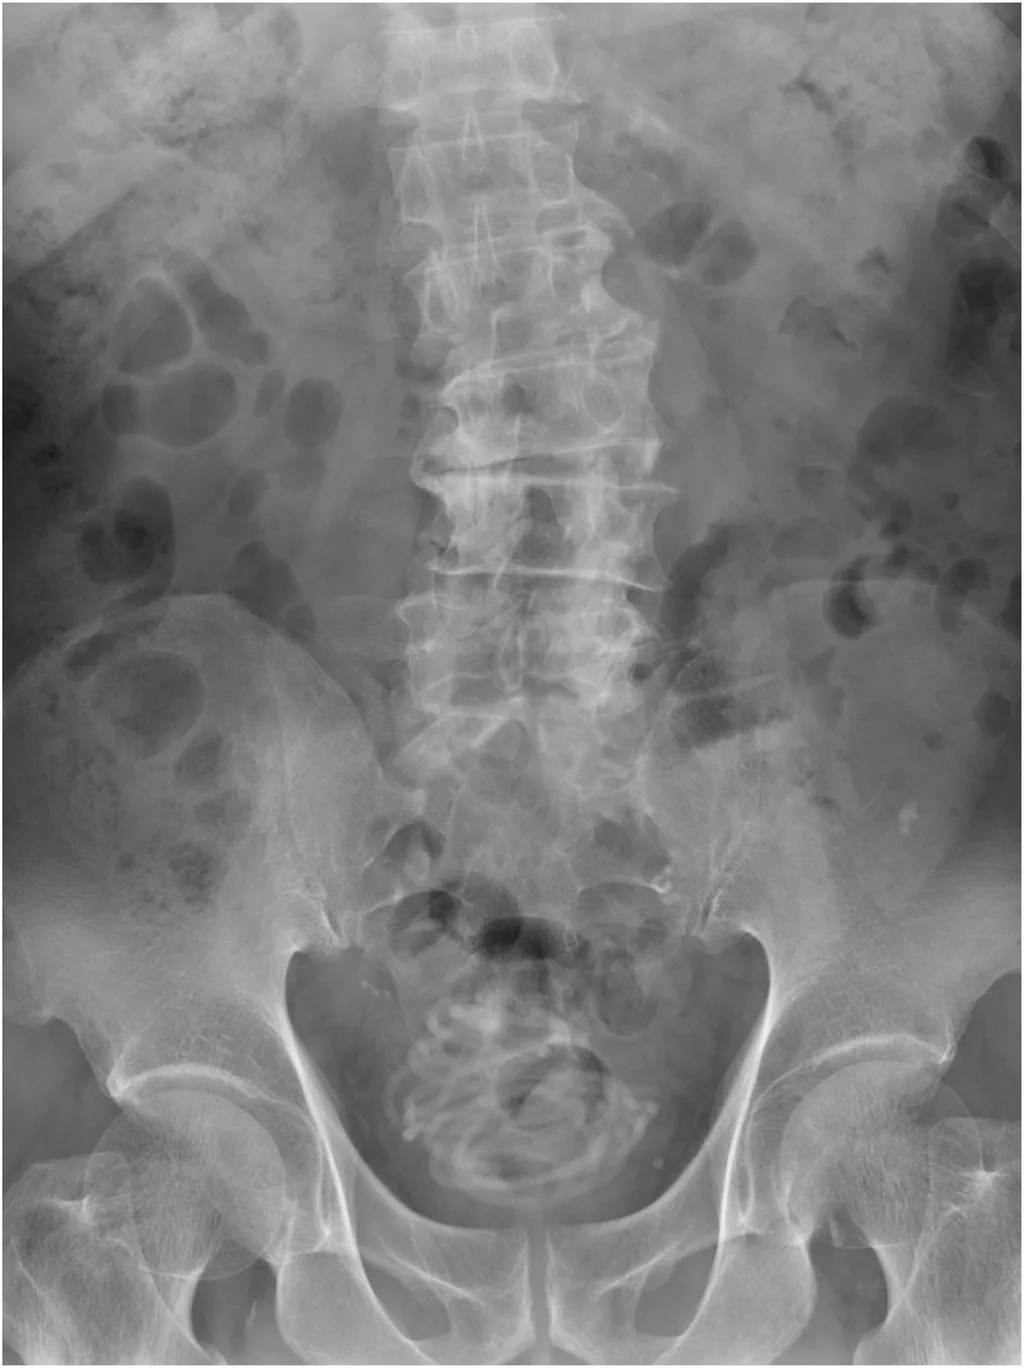 Raio-x do paciente, onde se pode ver o objeto no interior da bexiga (Imagem: Yokoyama et al./Urology Case Reports)